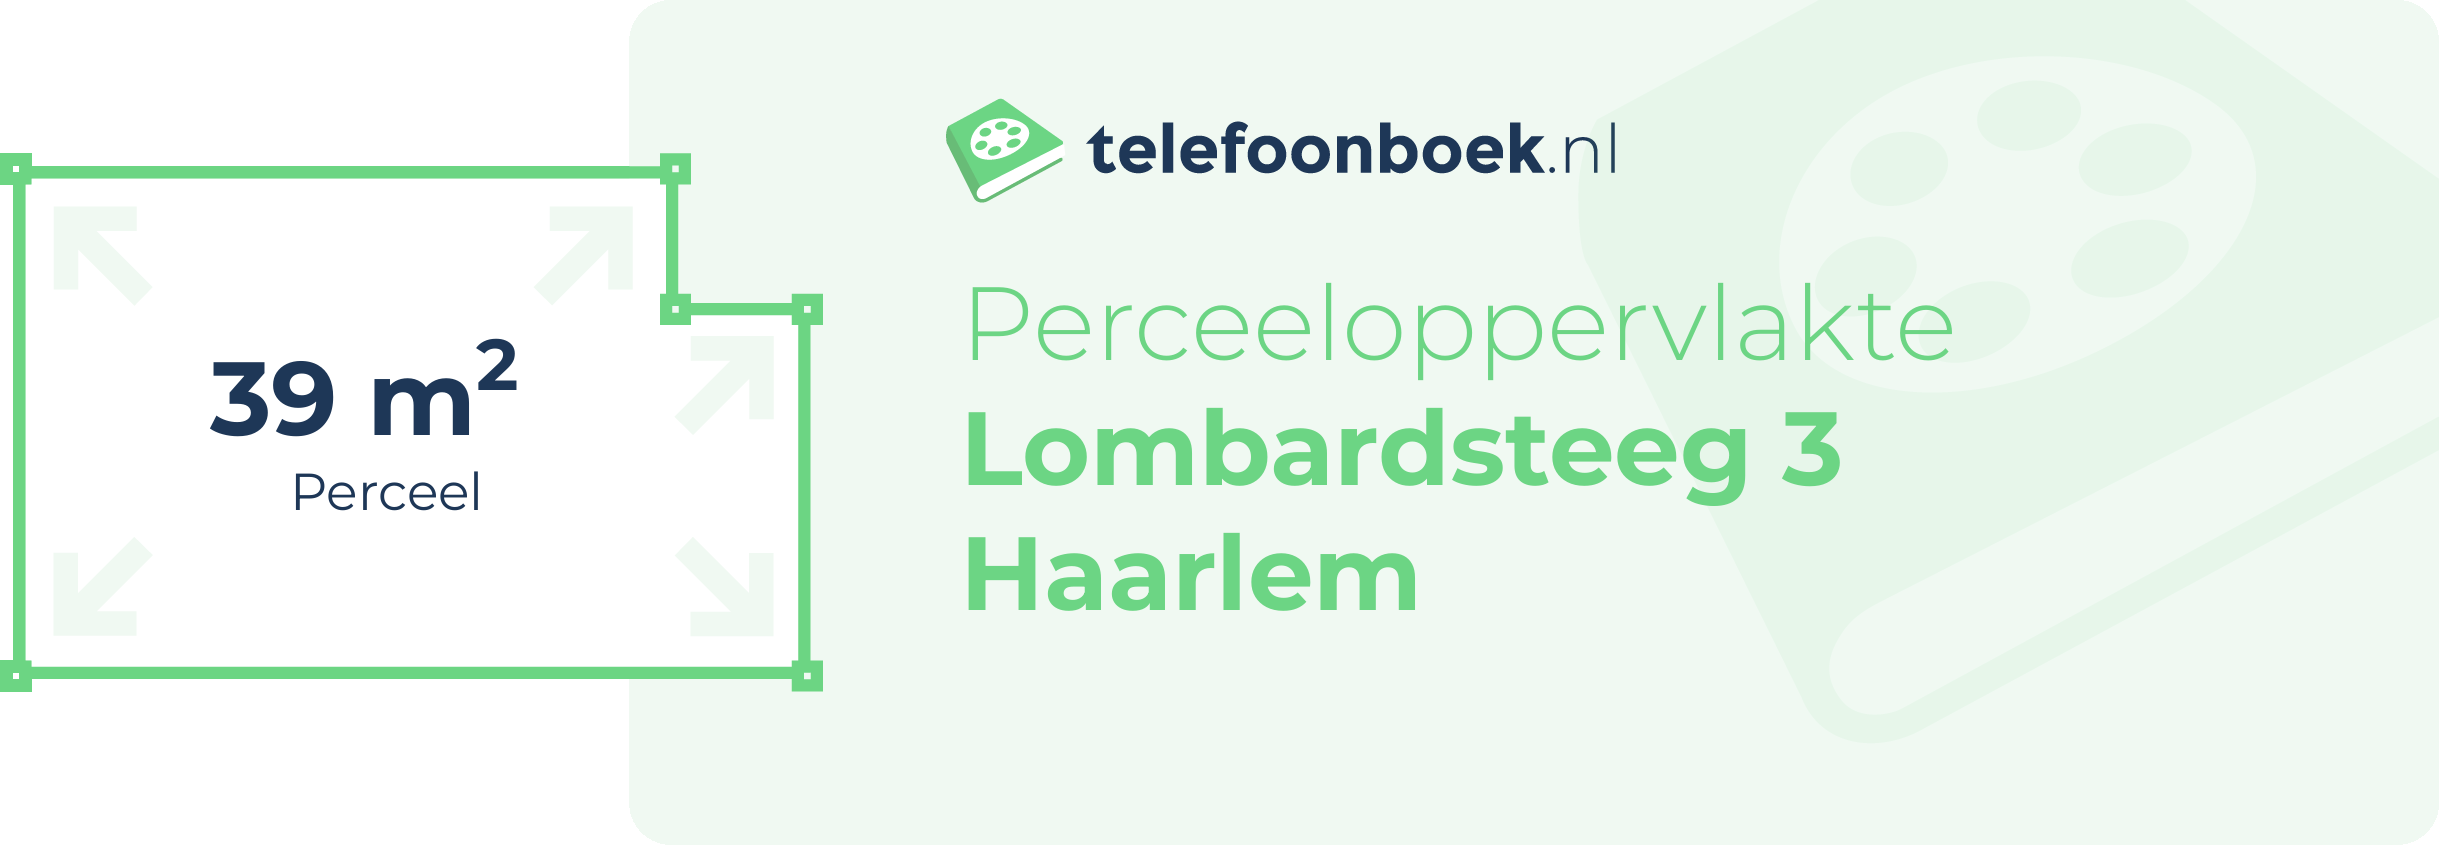 Perceeloppervlakte Lombardsteeg 3 Haarlem